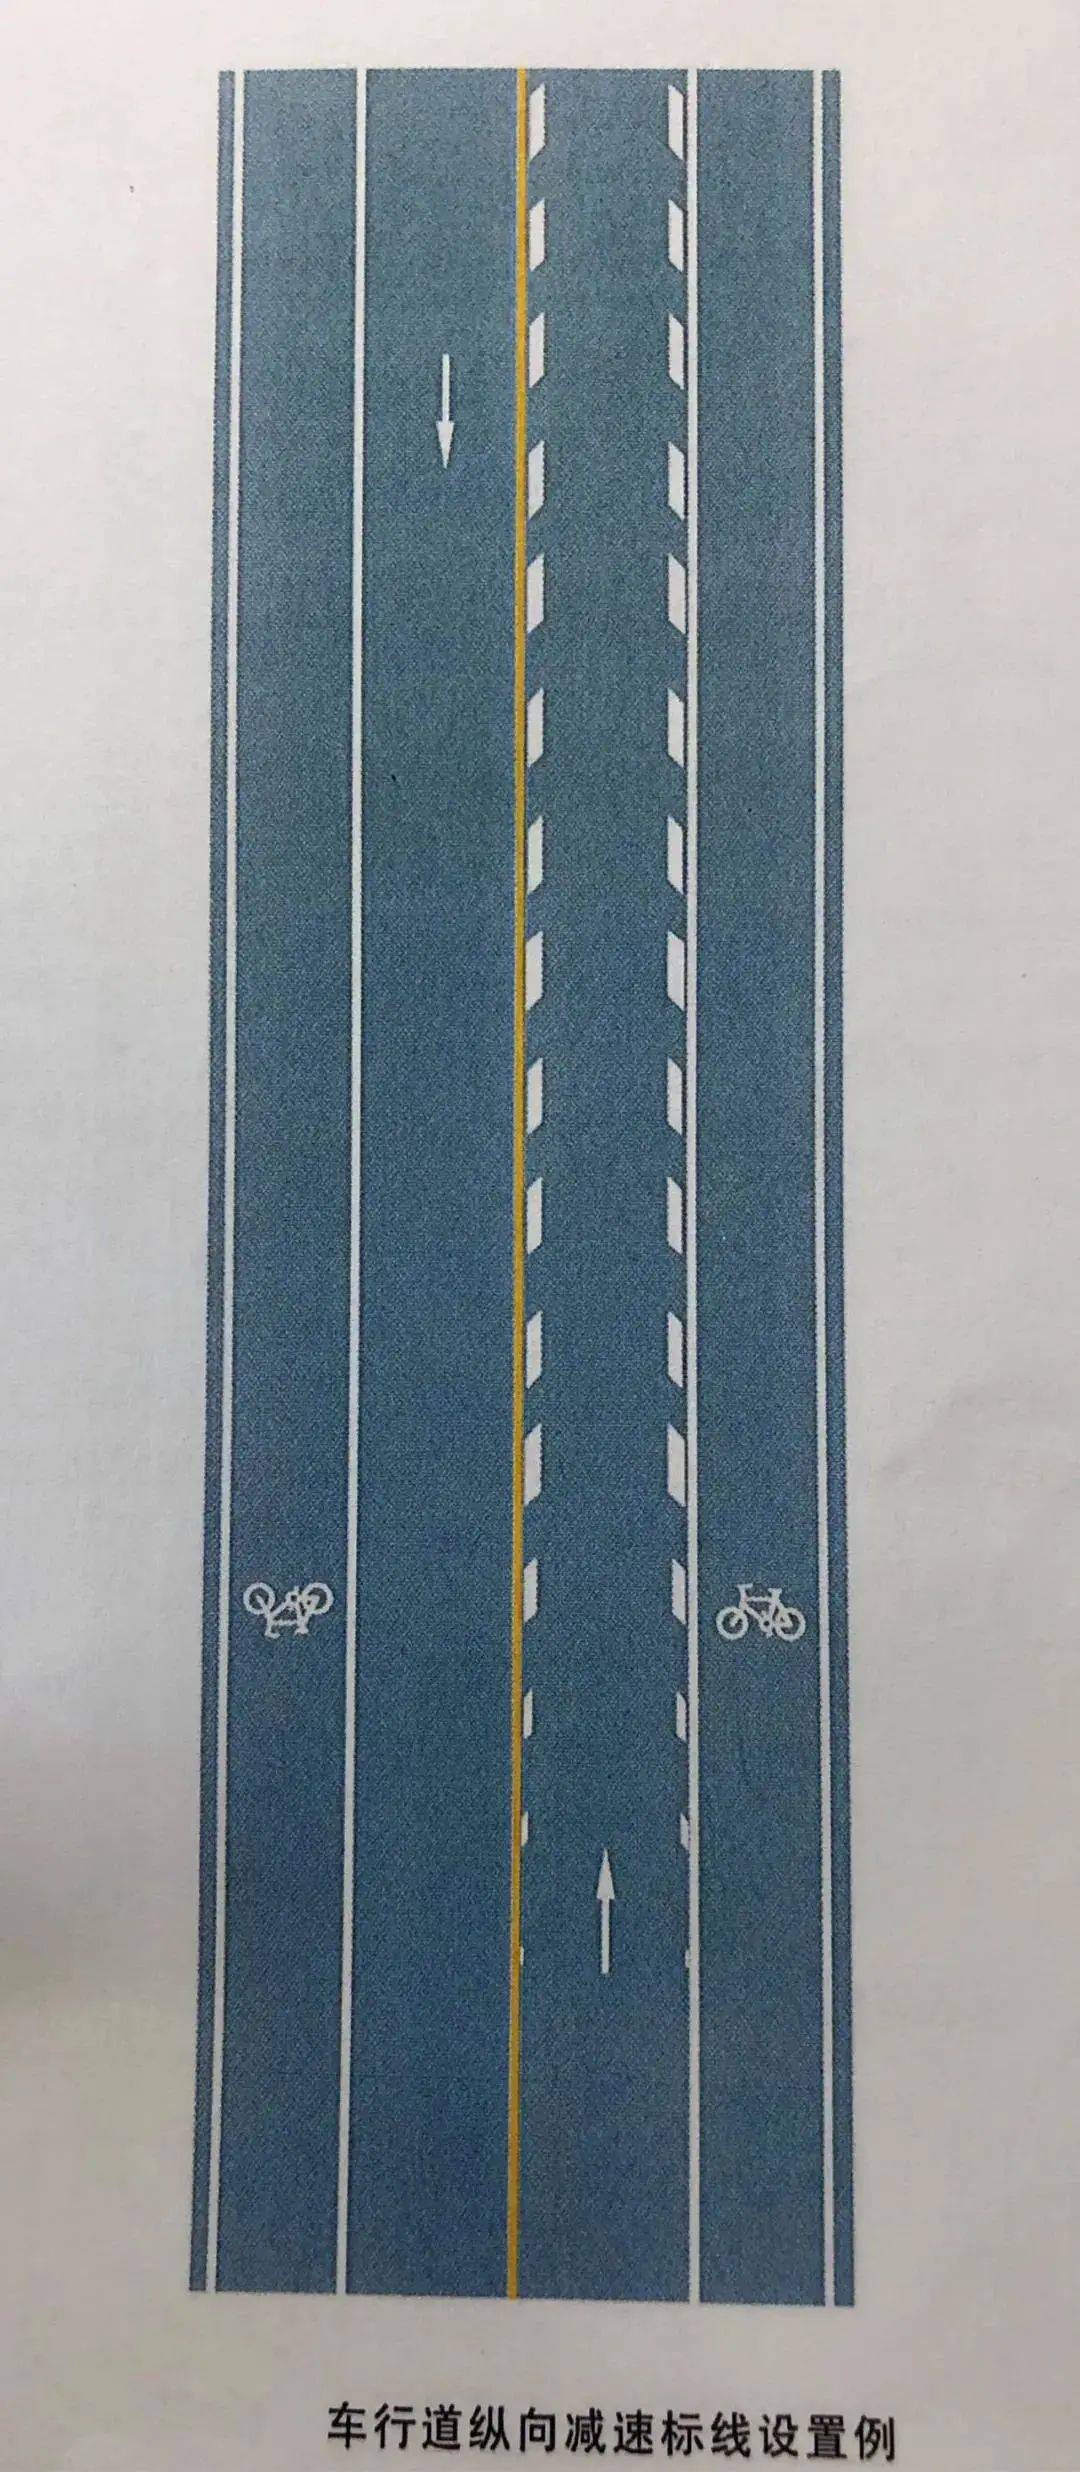 车行道纵向减速标线为一组  平行于车行道分界线的菱形块虚线